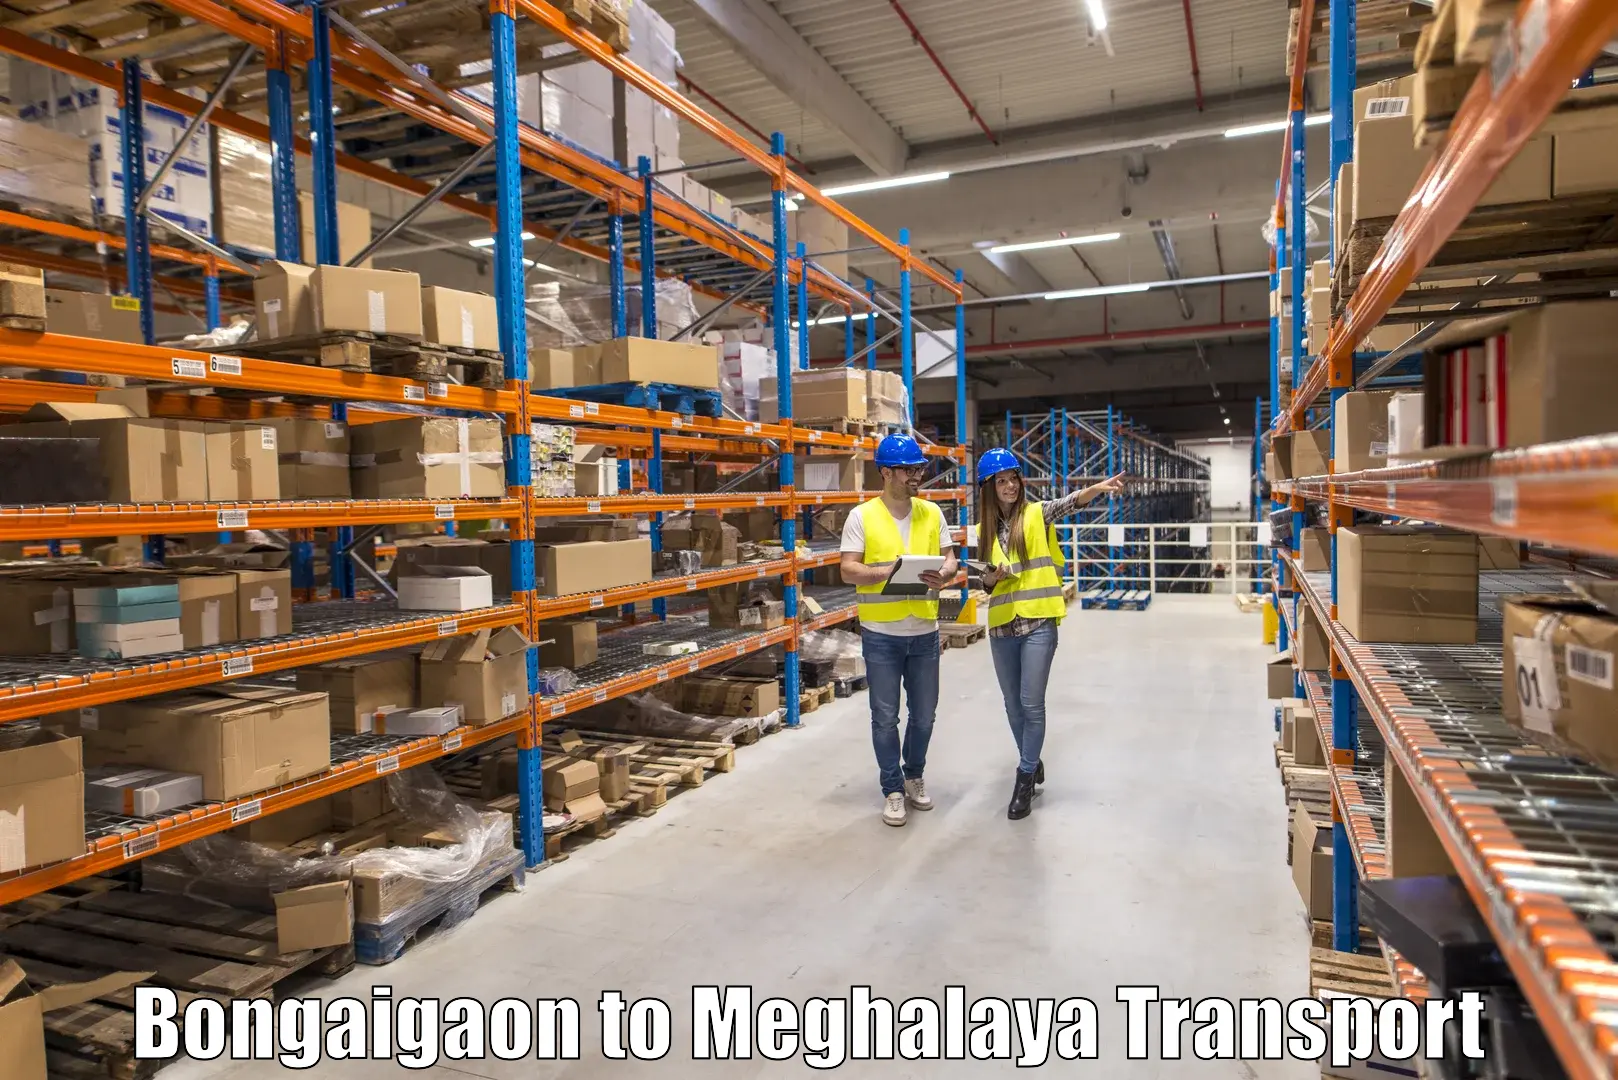 Cargo transportation services Bongaigaon to Meghalaya